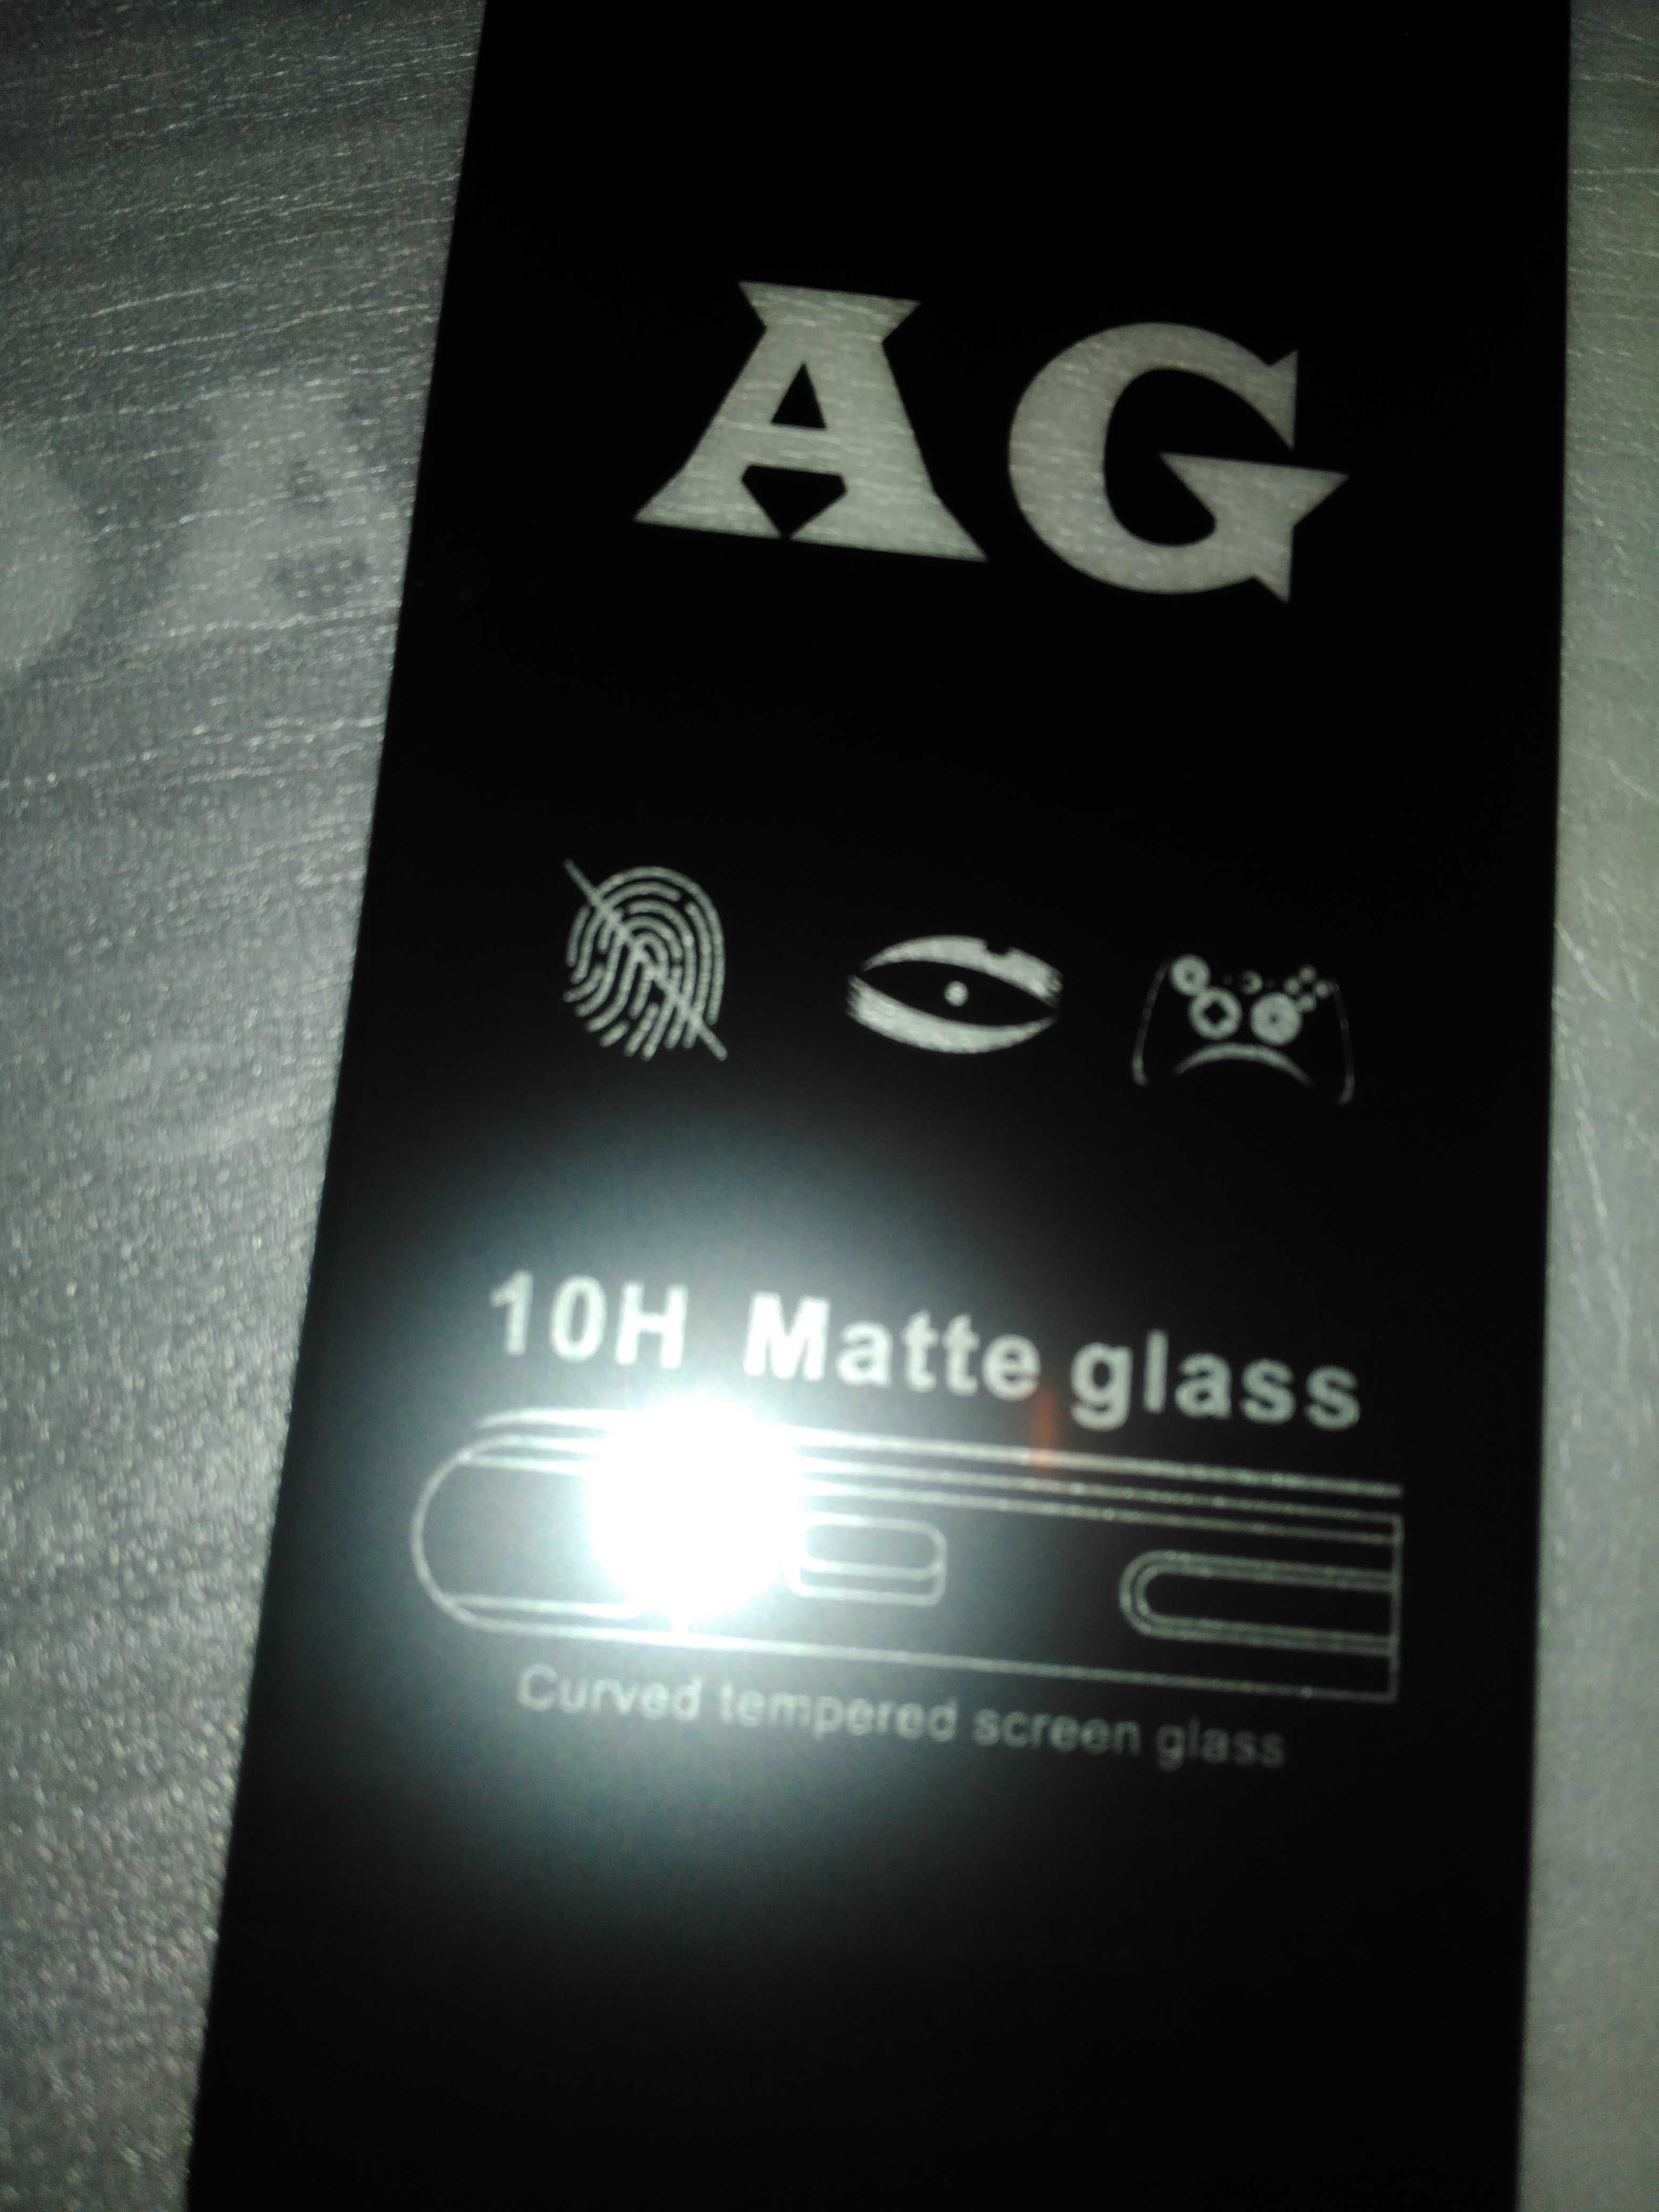 Продам защитное матовое стекло AG 10H Matte glass 3шт одним лотом